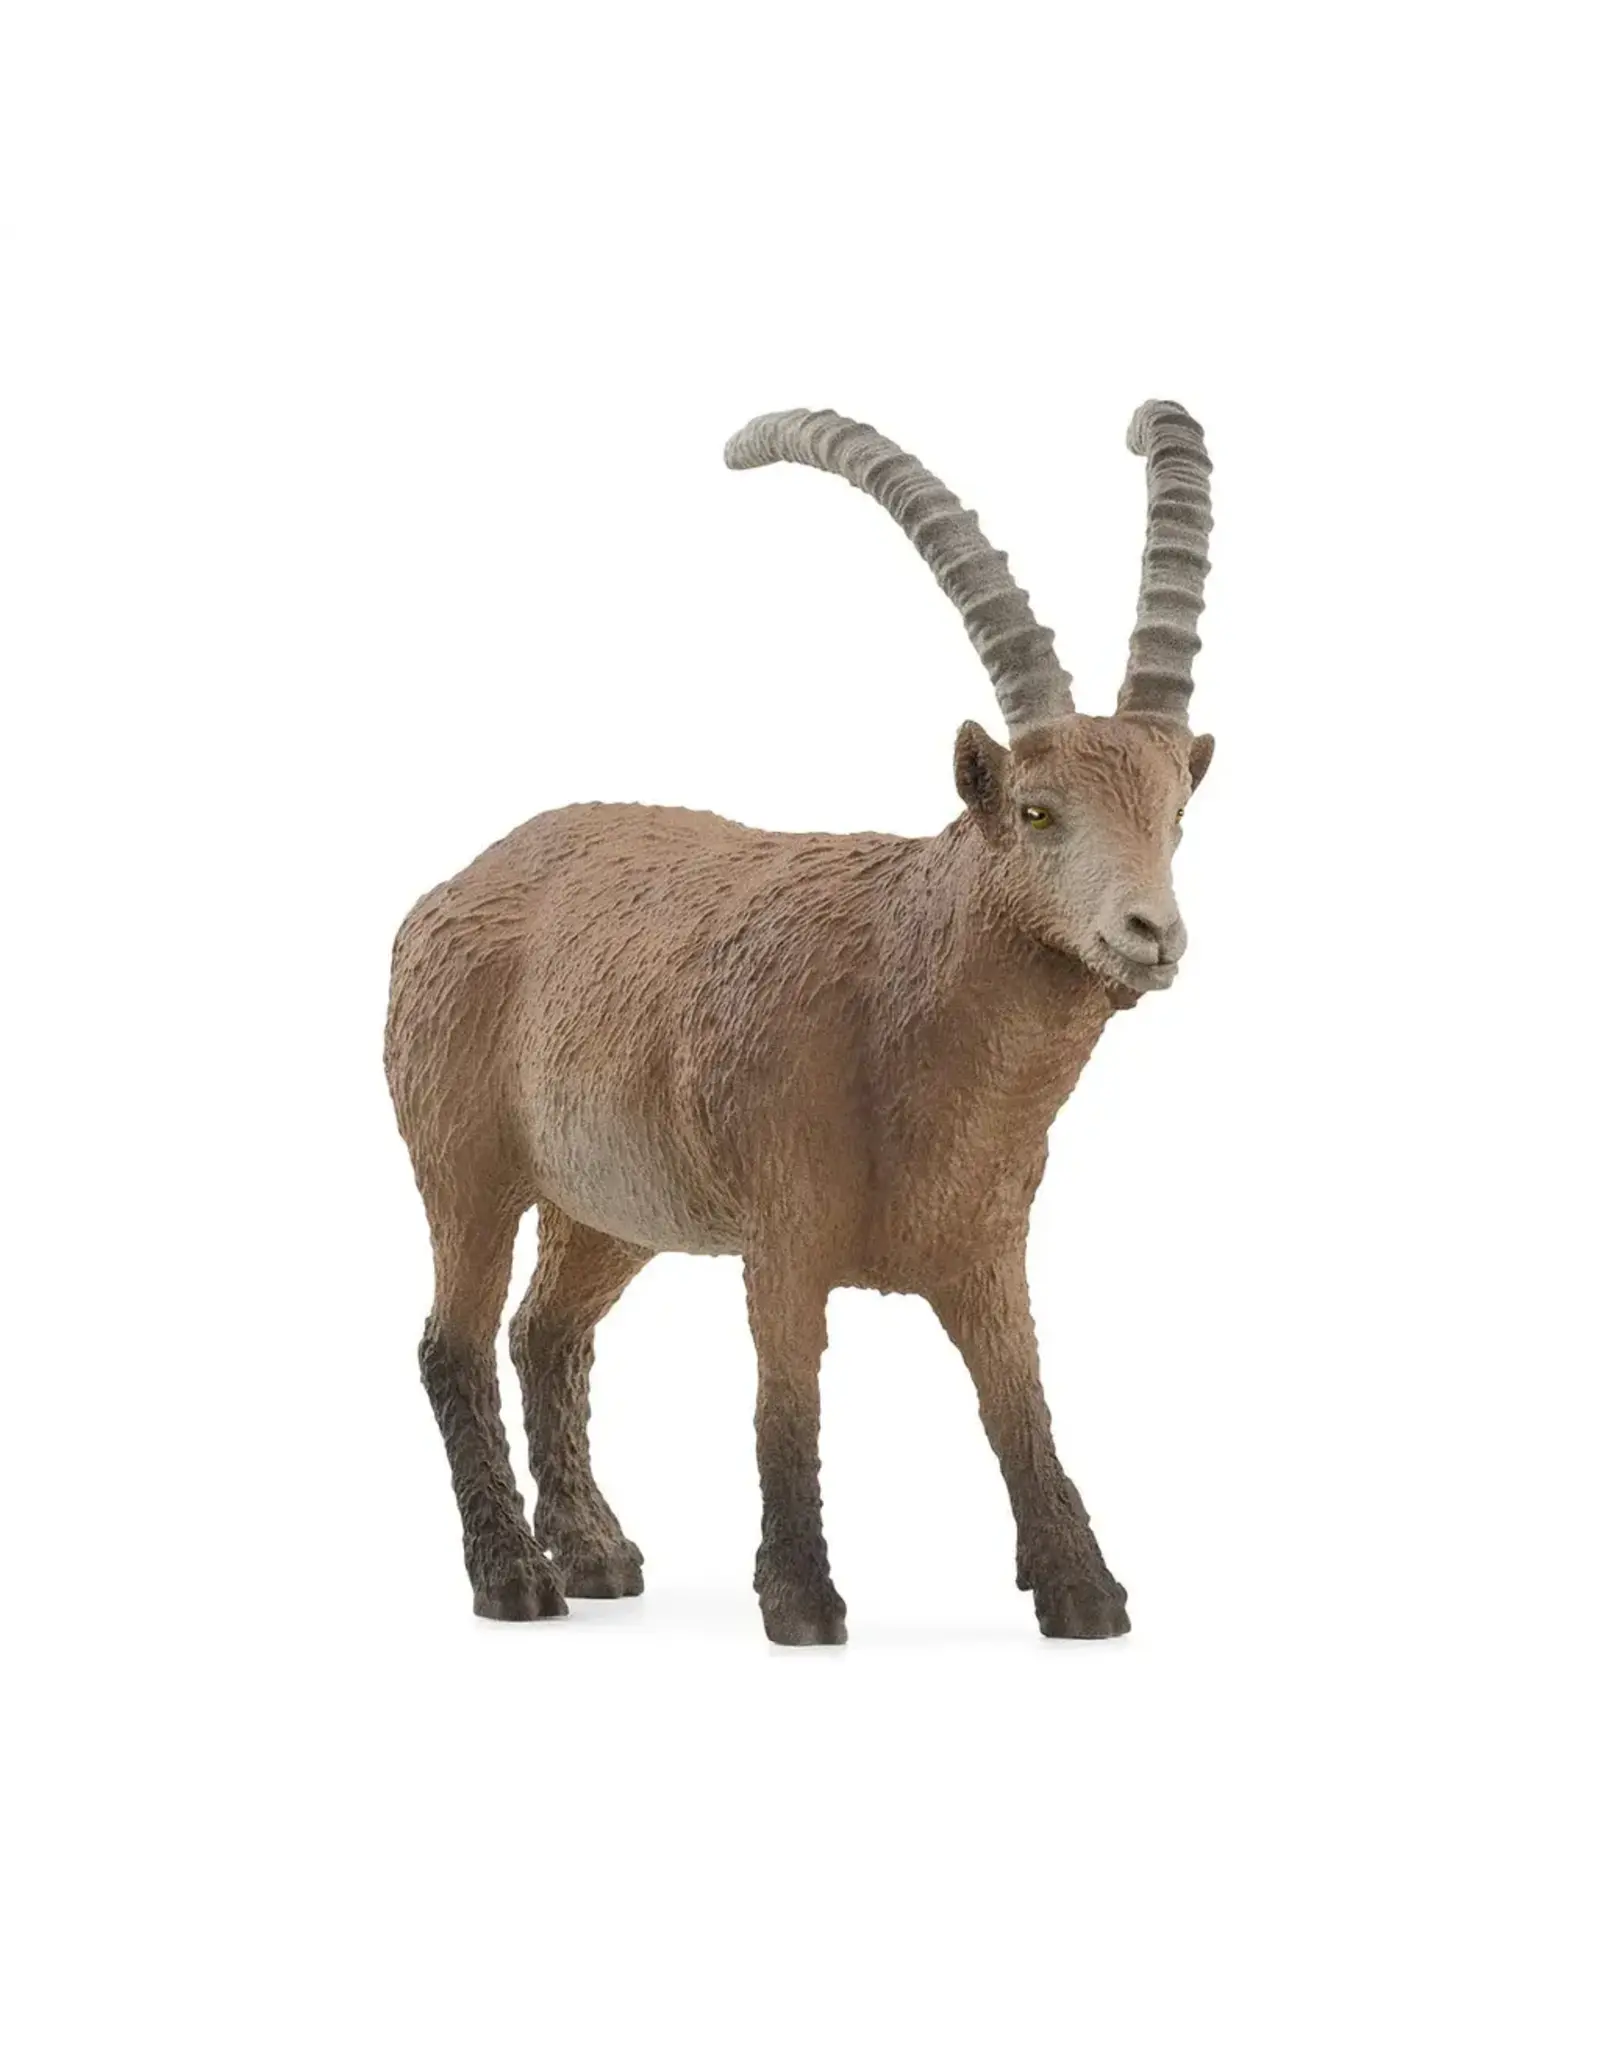 Schleich Ibex